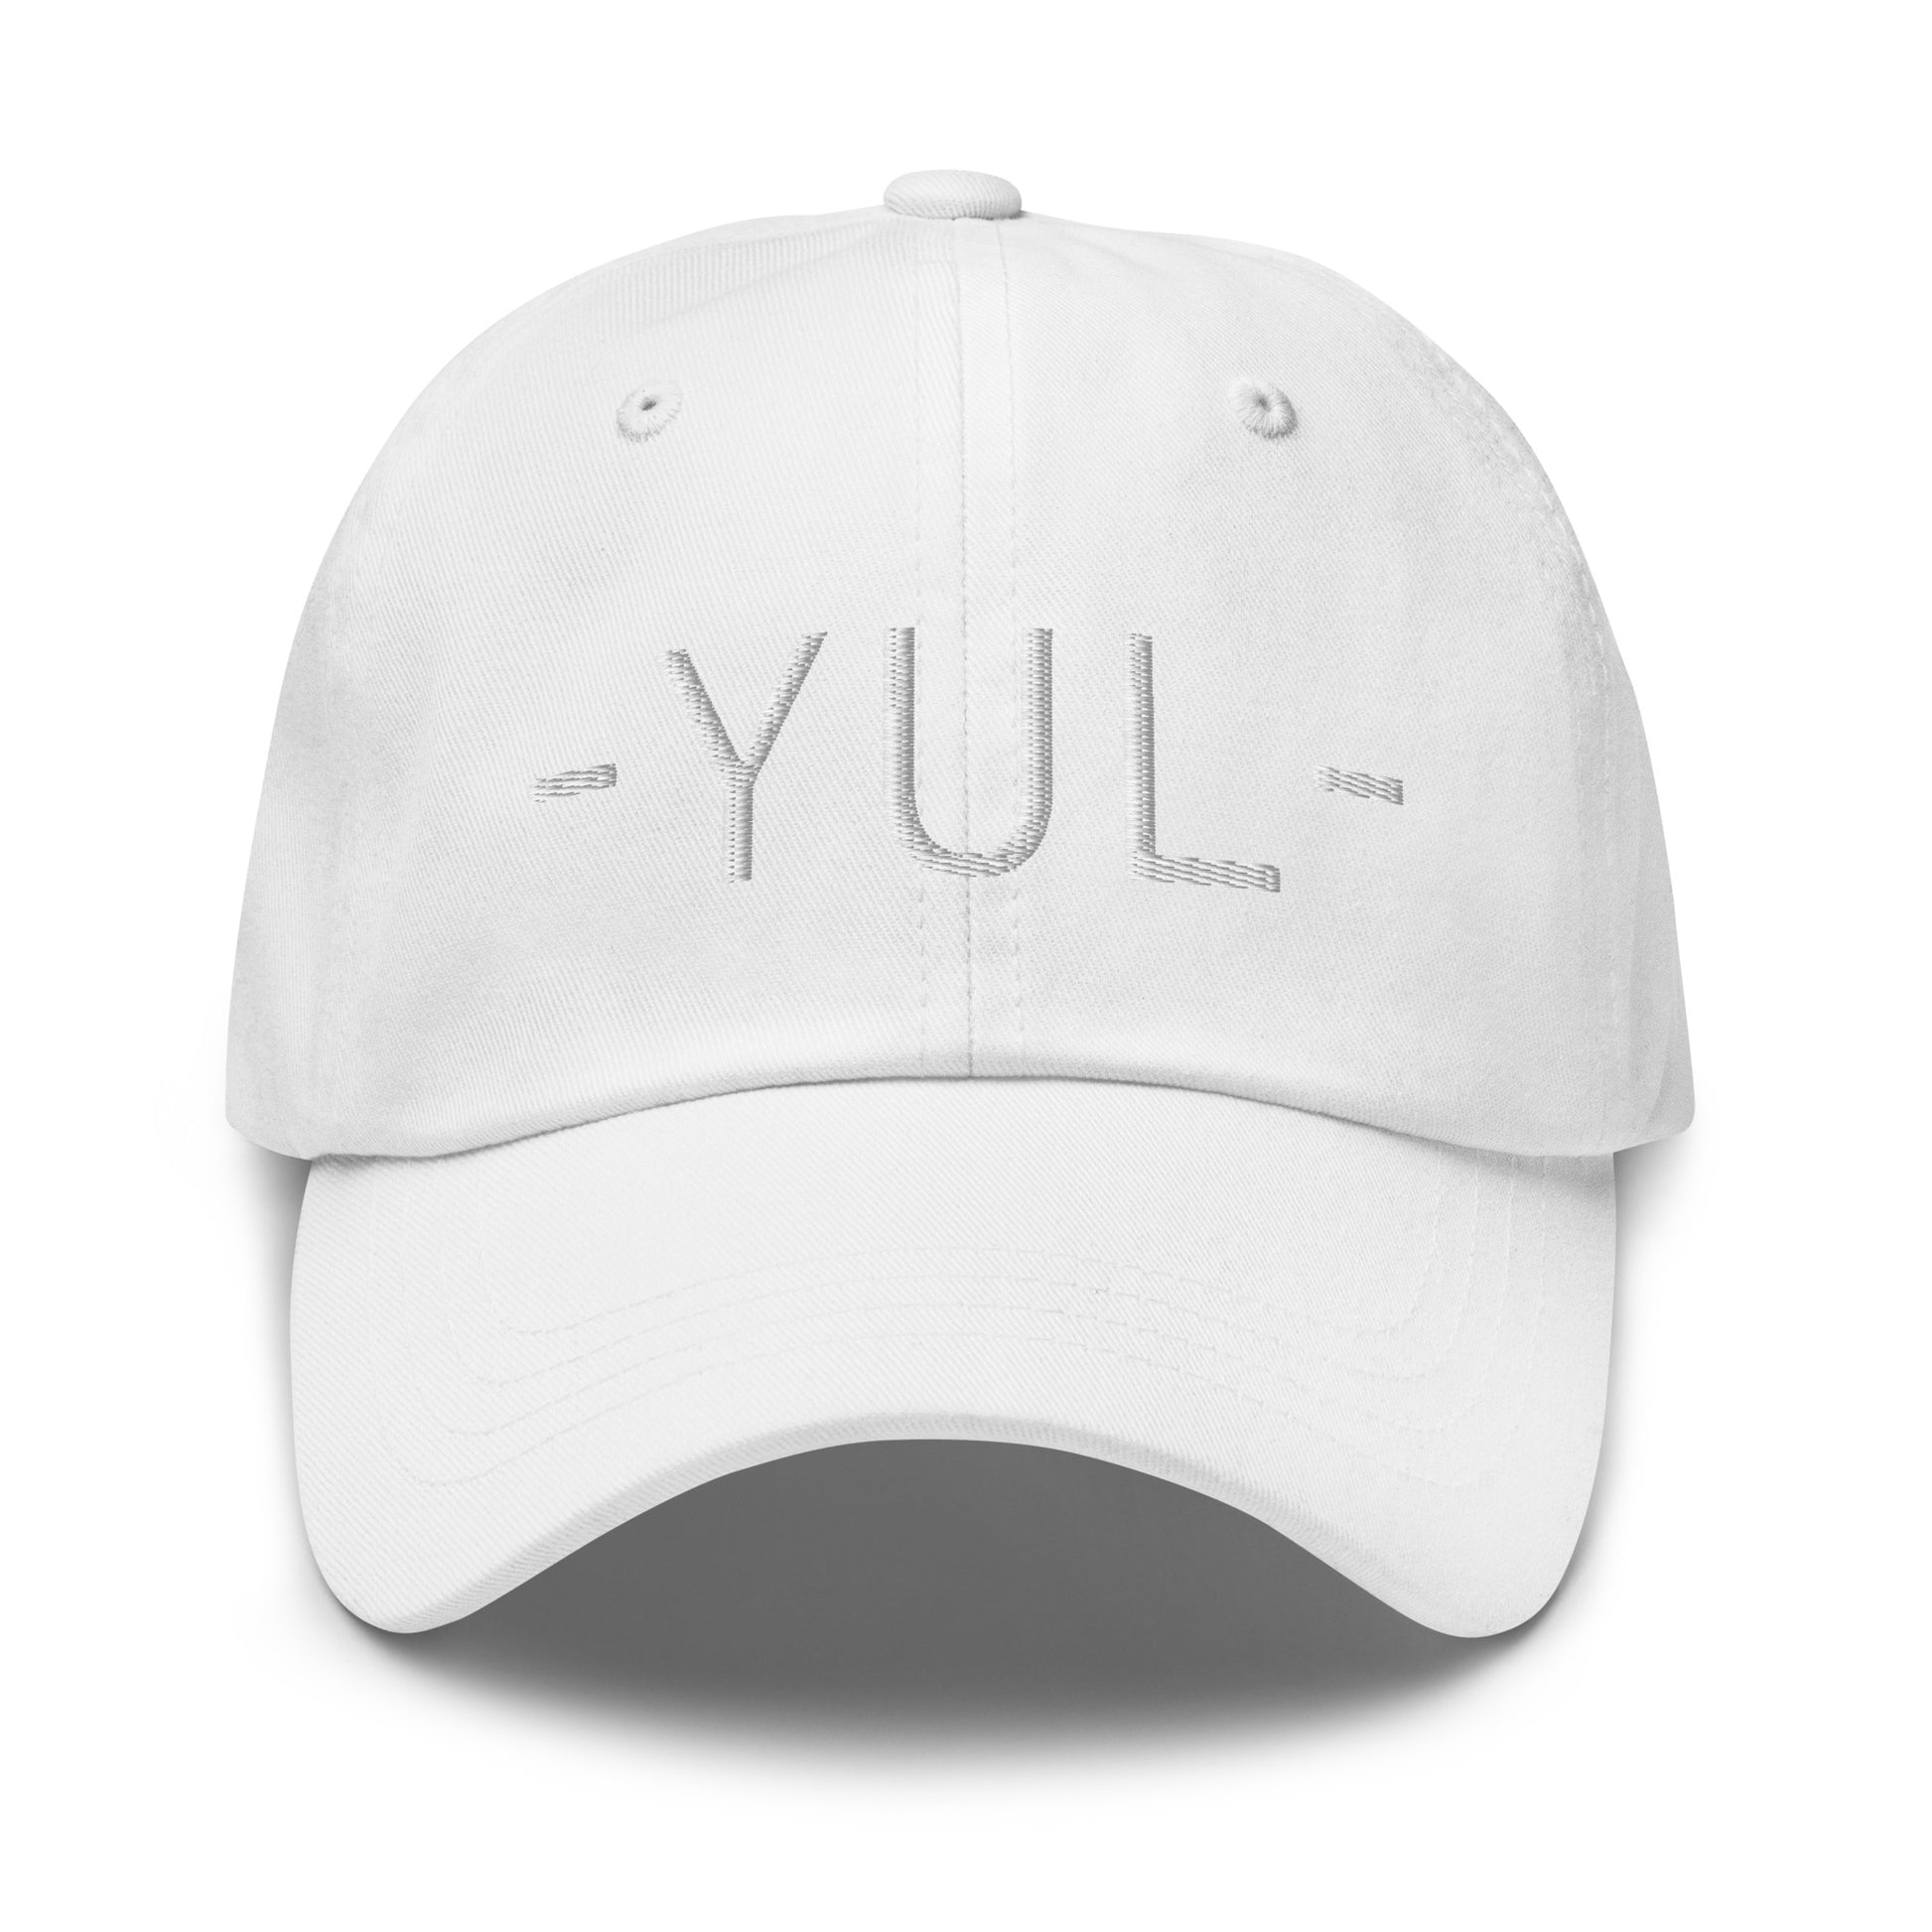 Souvenir Baseball Cap - White • YUL Montreal • YHM Designs - Image 29